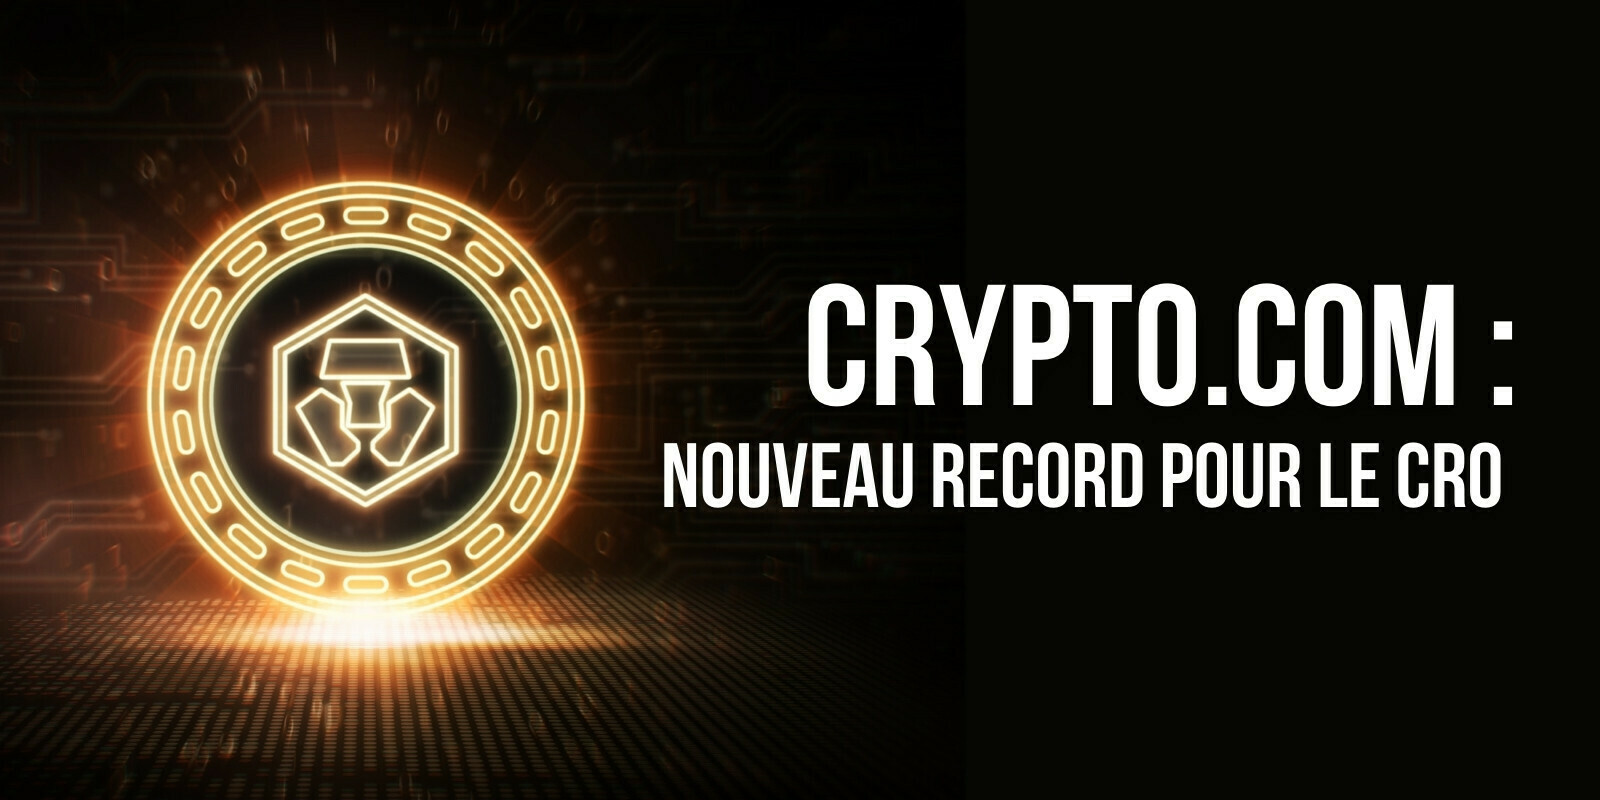 Le cours du CRO de Crypto.com atteint un nouveau record, au sein d’un marché plutôt morose